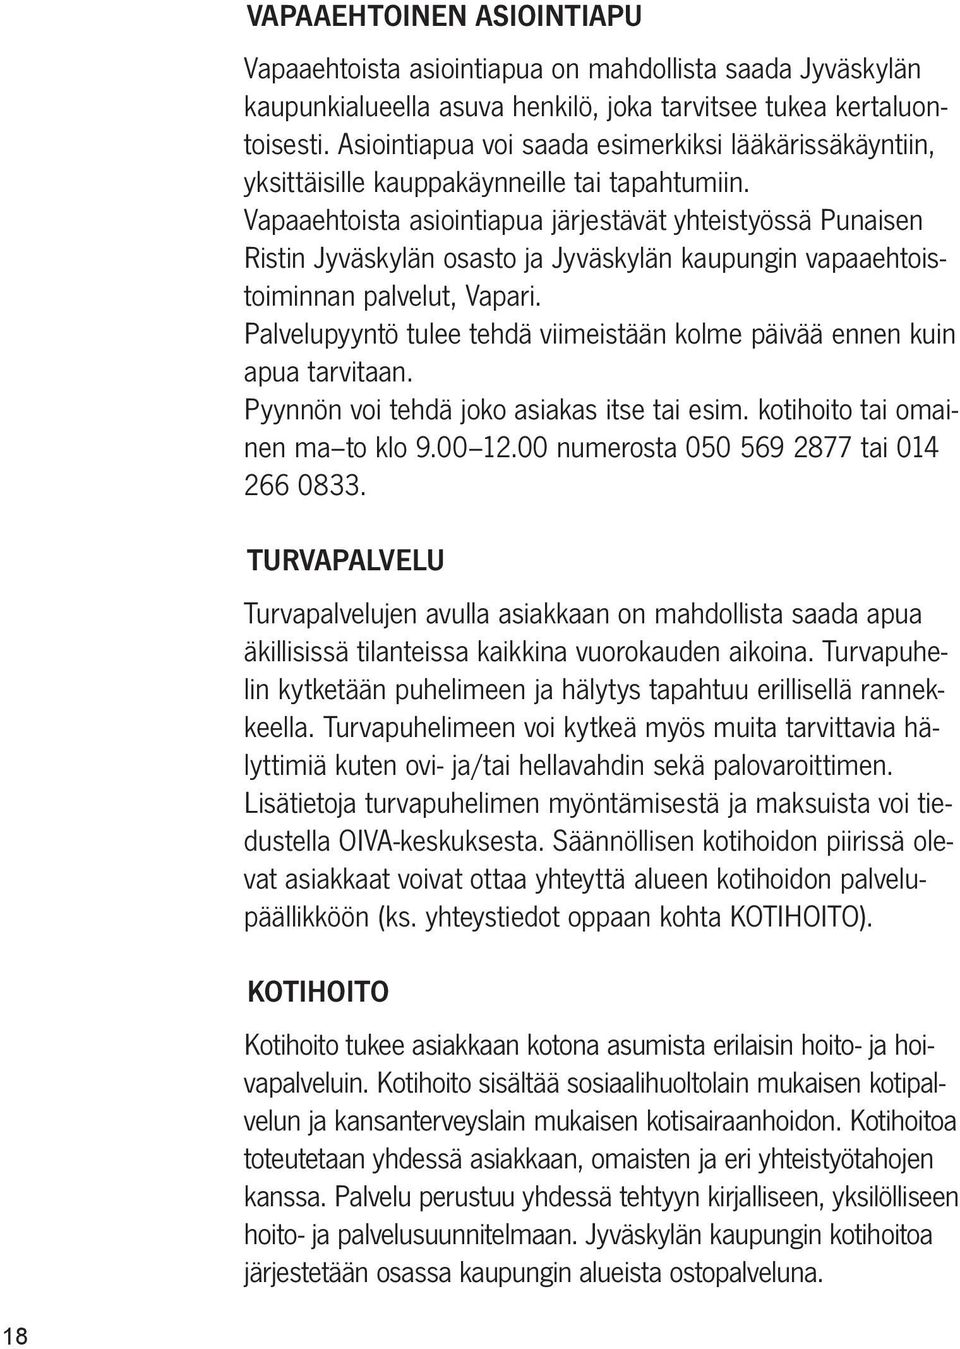 Vapaaehtoista asiointiapua järjestävät yhteistyössä Punaisen Ristin Jyväskylän osasto ja Jyväskylän kaupungin vapaaehtoistoiminnan palvelut, Vapari.